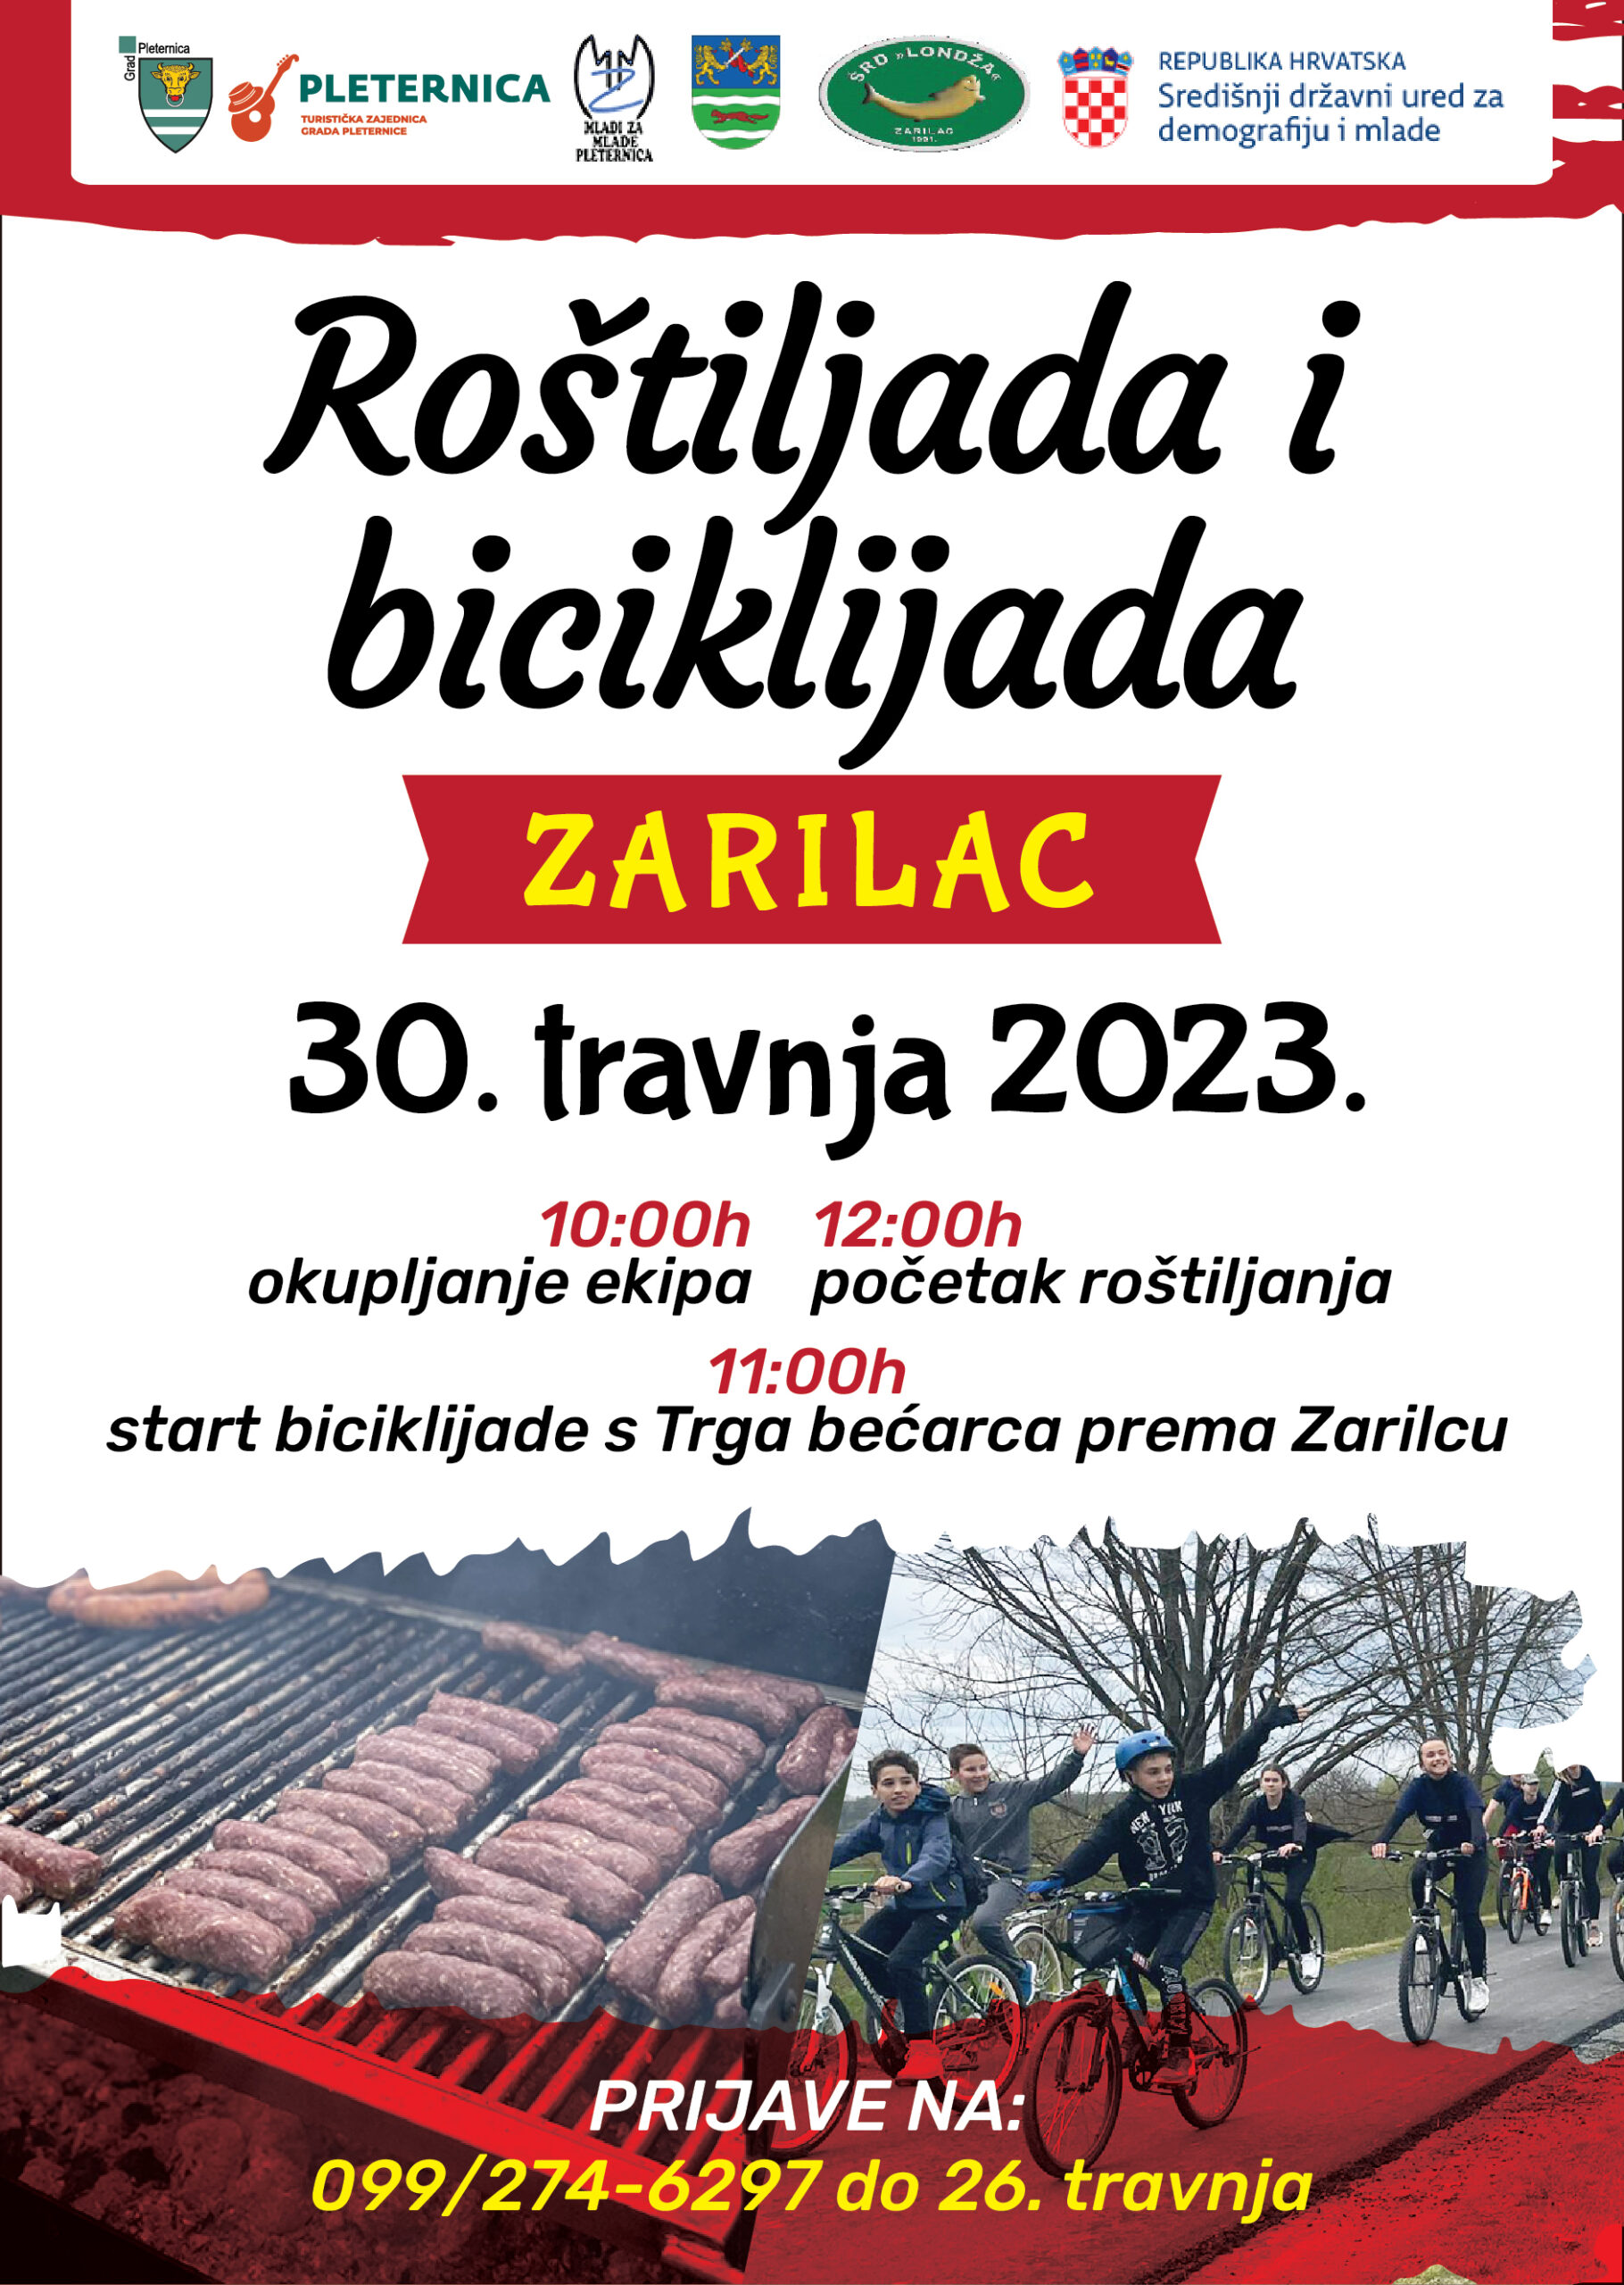 Požega.eu | Najveća slavonska roštiljada i biciklijada – prijavi svoju ekipu i 30. travnja budi u Zarilcu